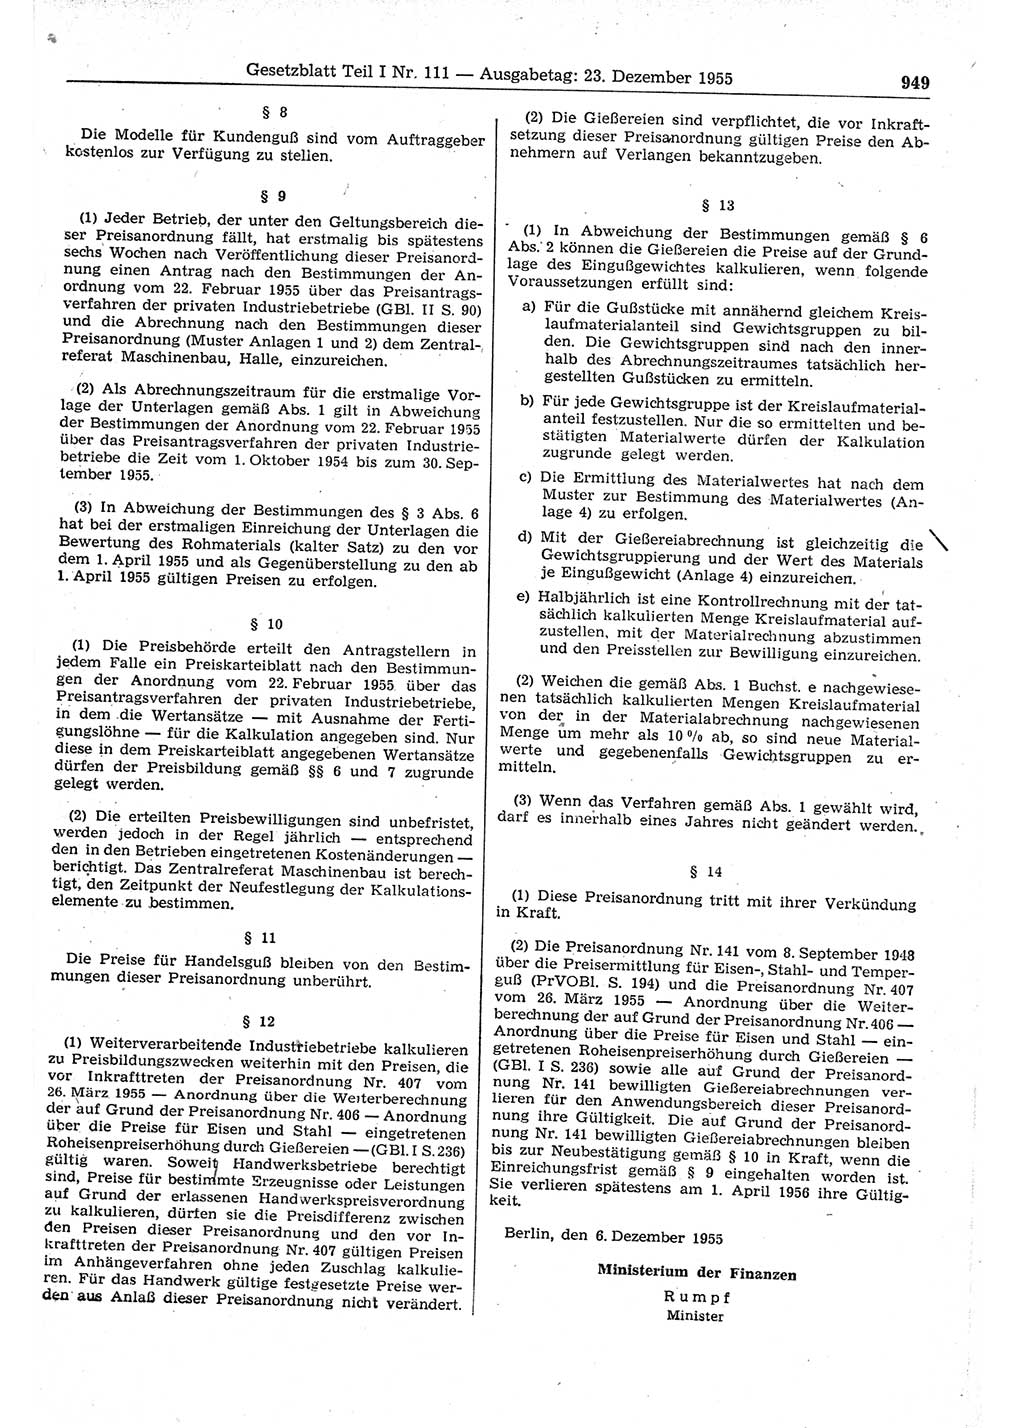 Gesetzblatt (GBl.) der Deutschen Demokratischen Republik (DDR) Teil Ⅰ 1955, Seite 949 (GBl. DDR Ⅰ 1955, S. 949)